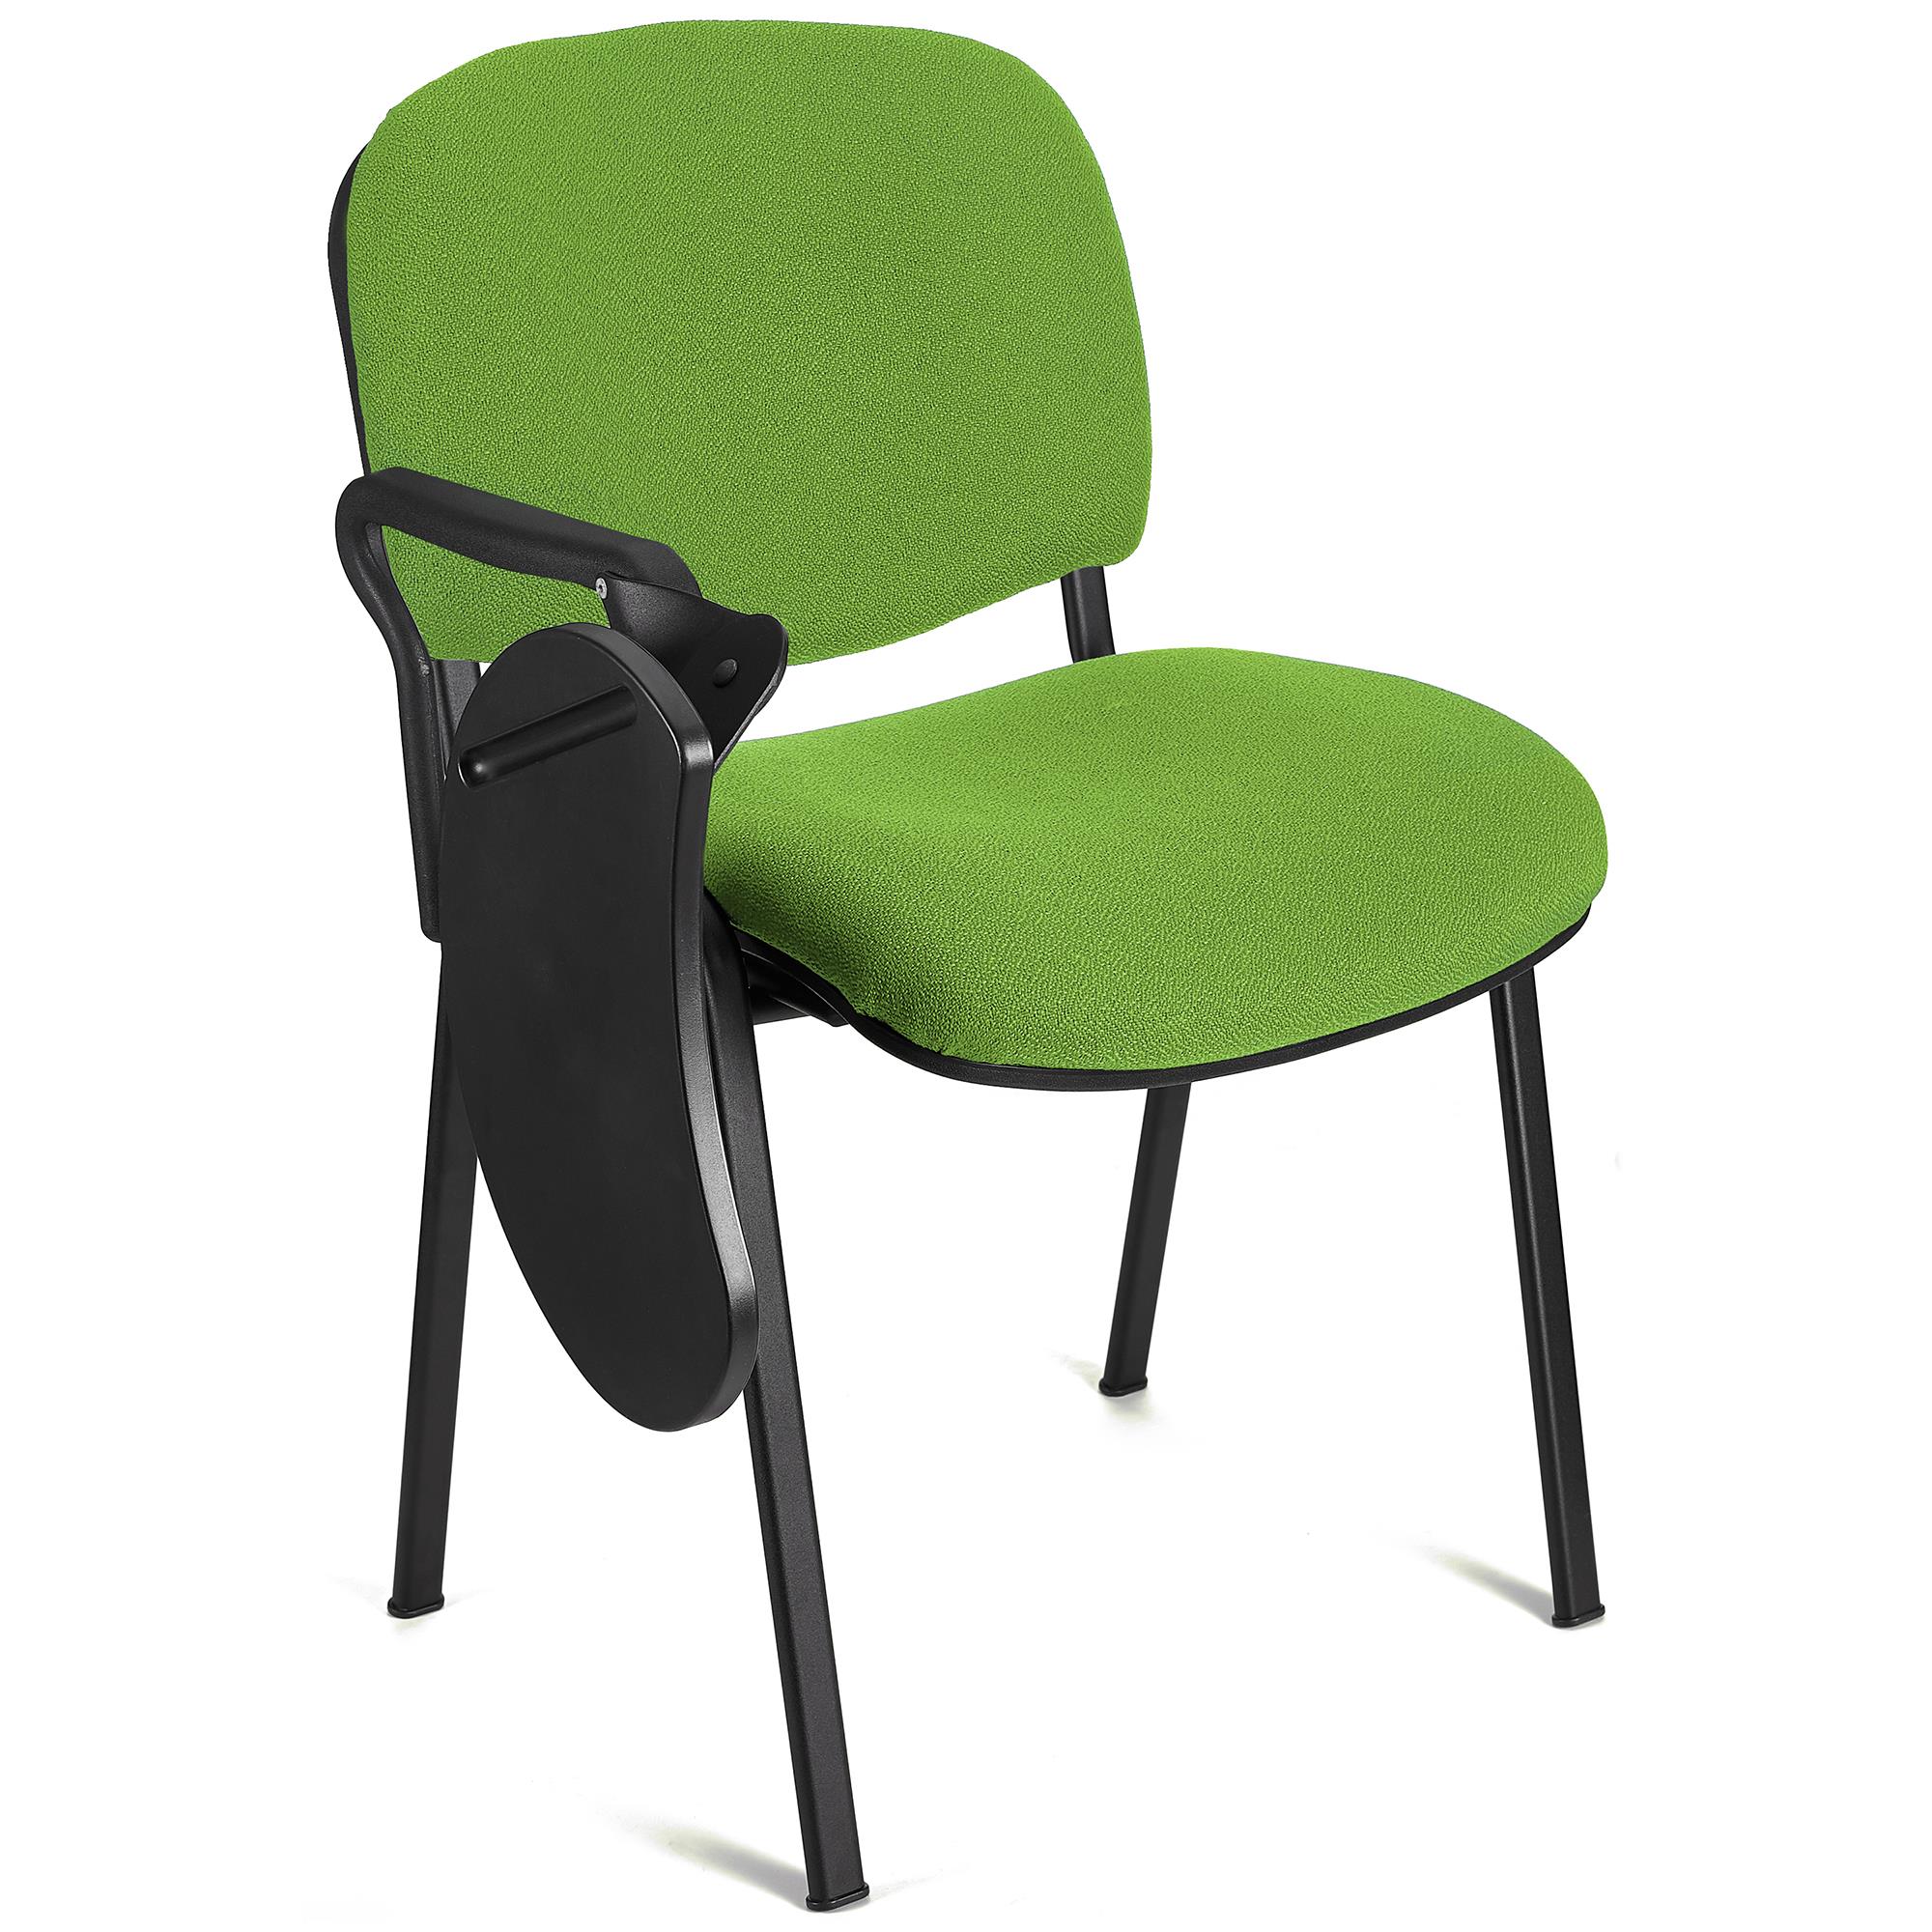 Cadeira de Visitante MOBY com PALMATÓRIA. Preço imbatível! Cor Verde Lima e Patas Pretas